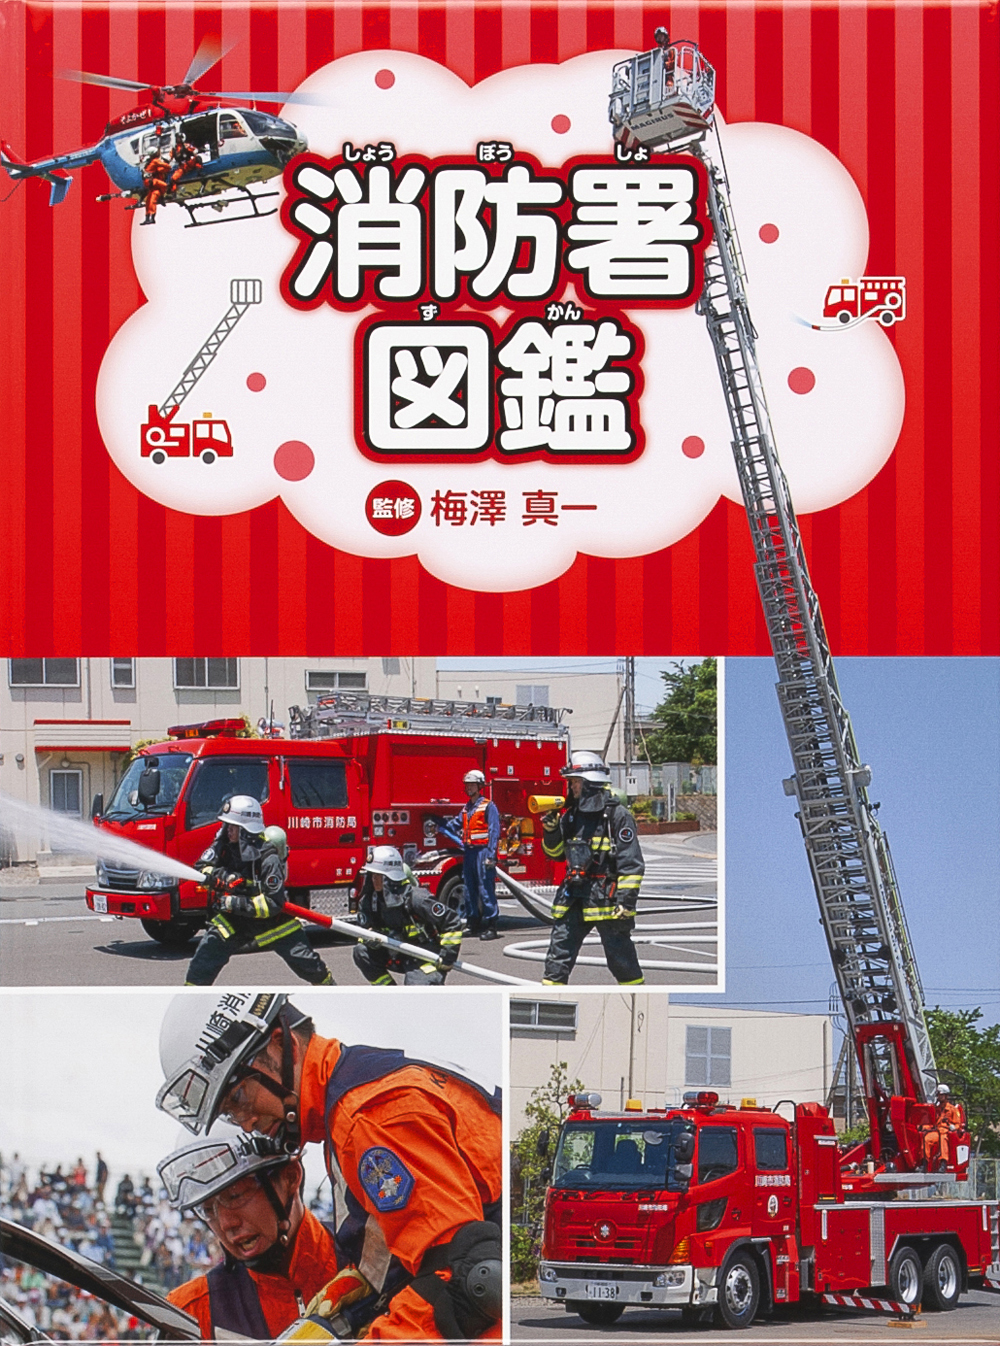 『消防署図鑑』が産経新聞にて紹介されました